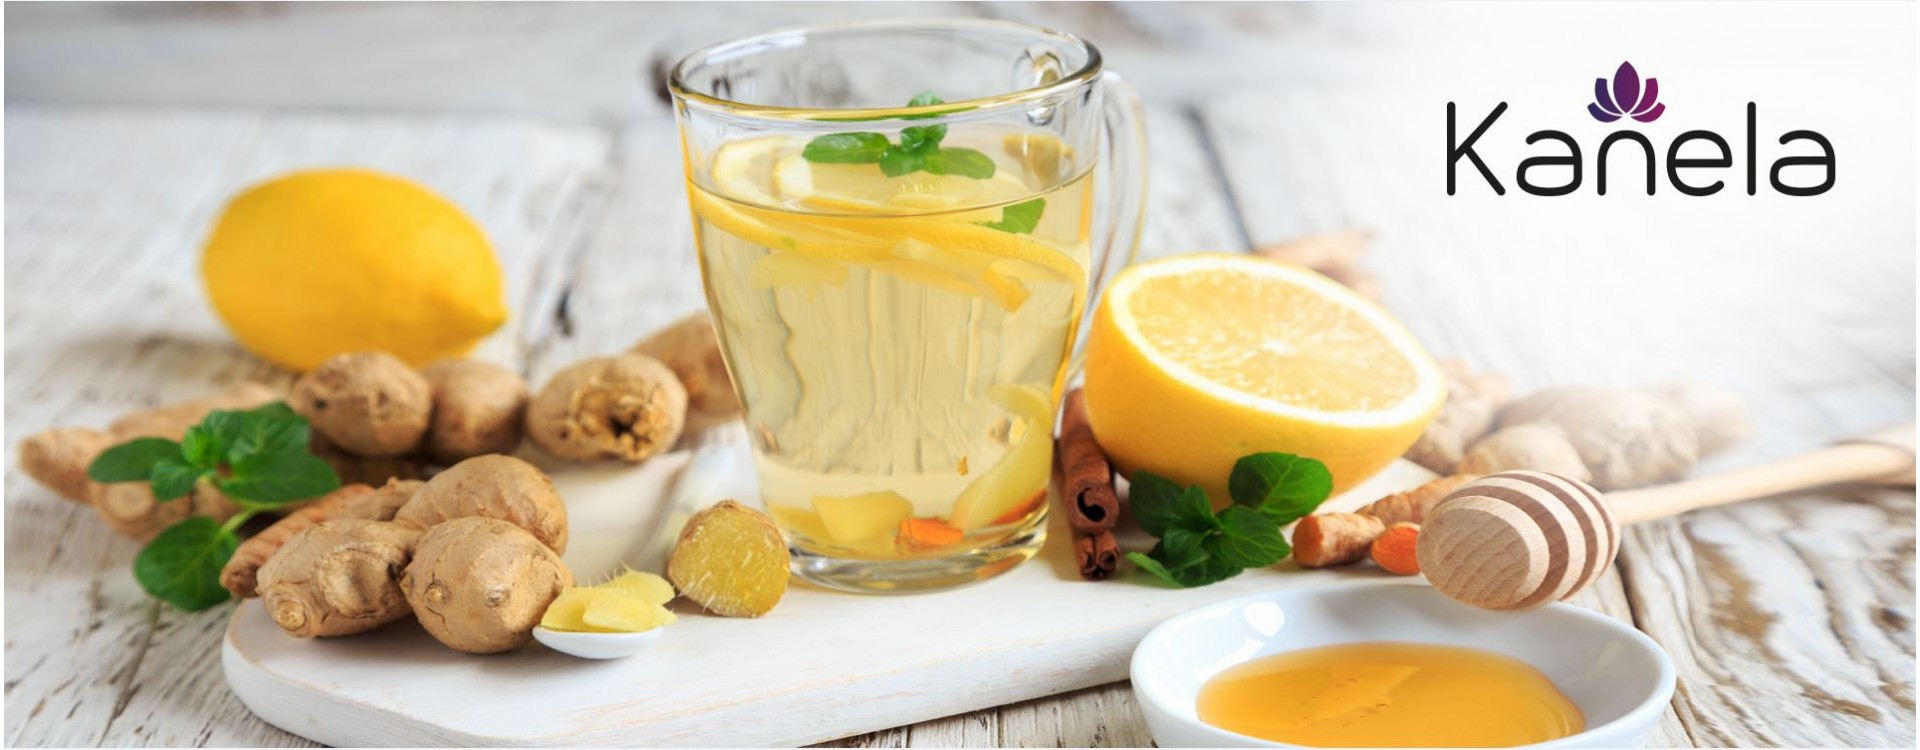 Quale tè aiuta con i problemi digestivi?